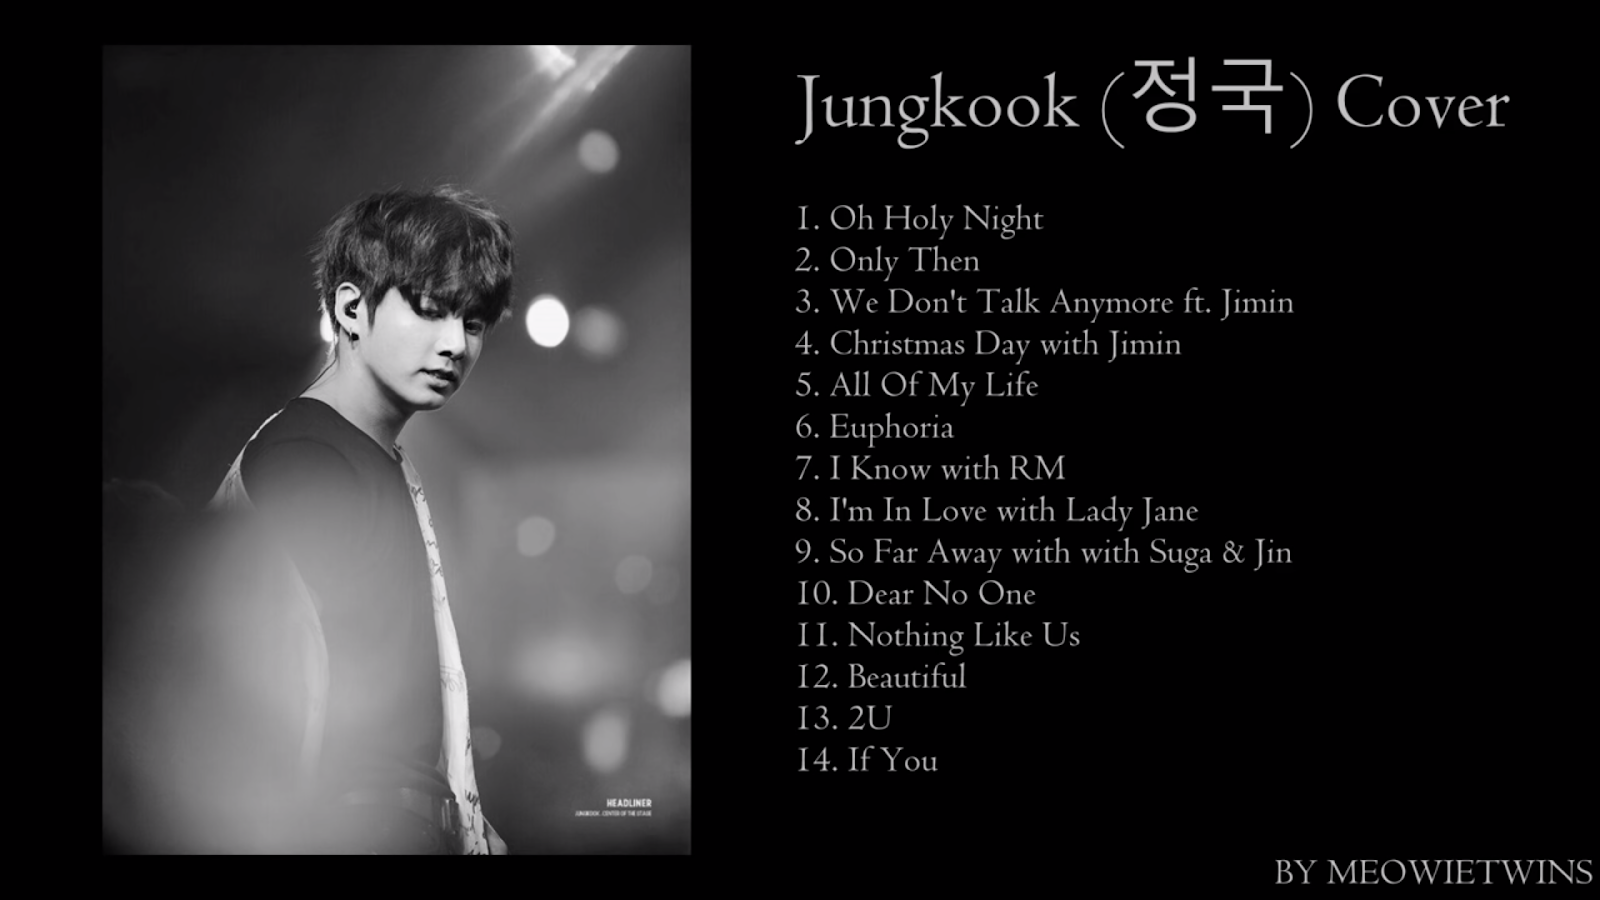 I wonder песня чонгук. Jungkook обложка на альбом. Чонгук Falling обложка. Jungkook purpose обложка. Jungkook only then обложка.